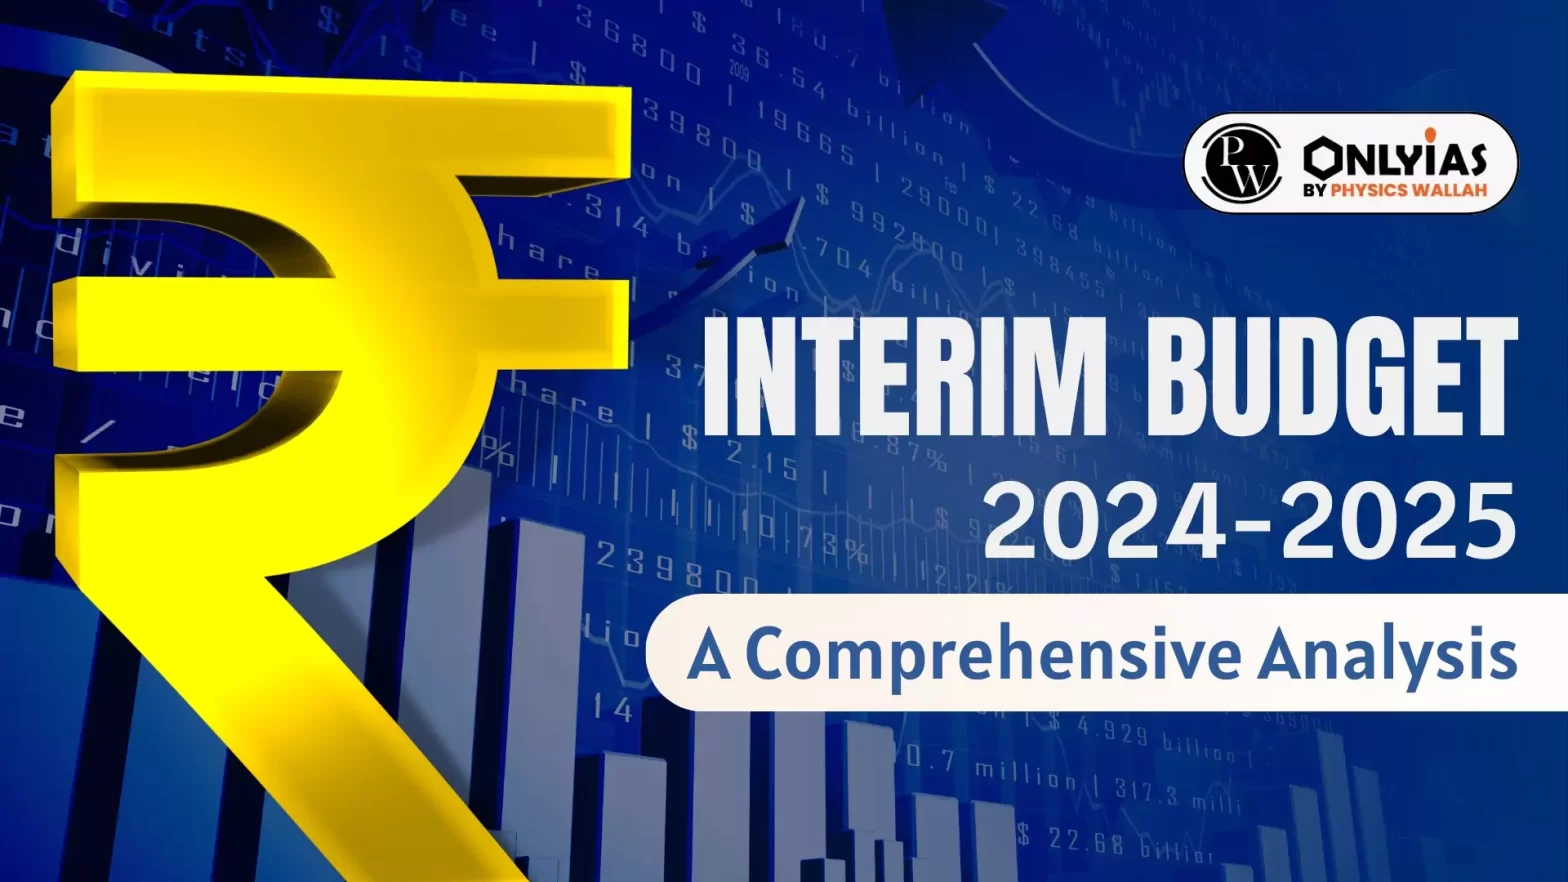 Interim Budget 2024-2025: A Comprehensive Analysis